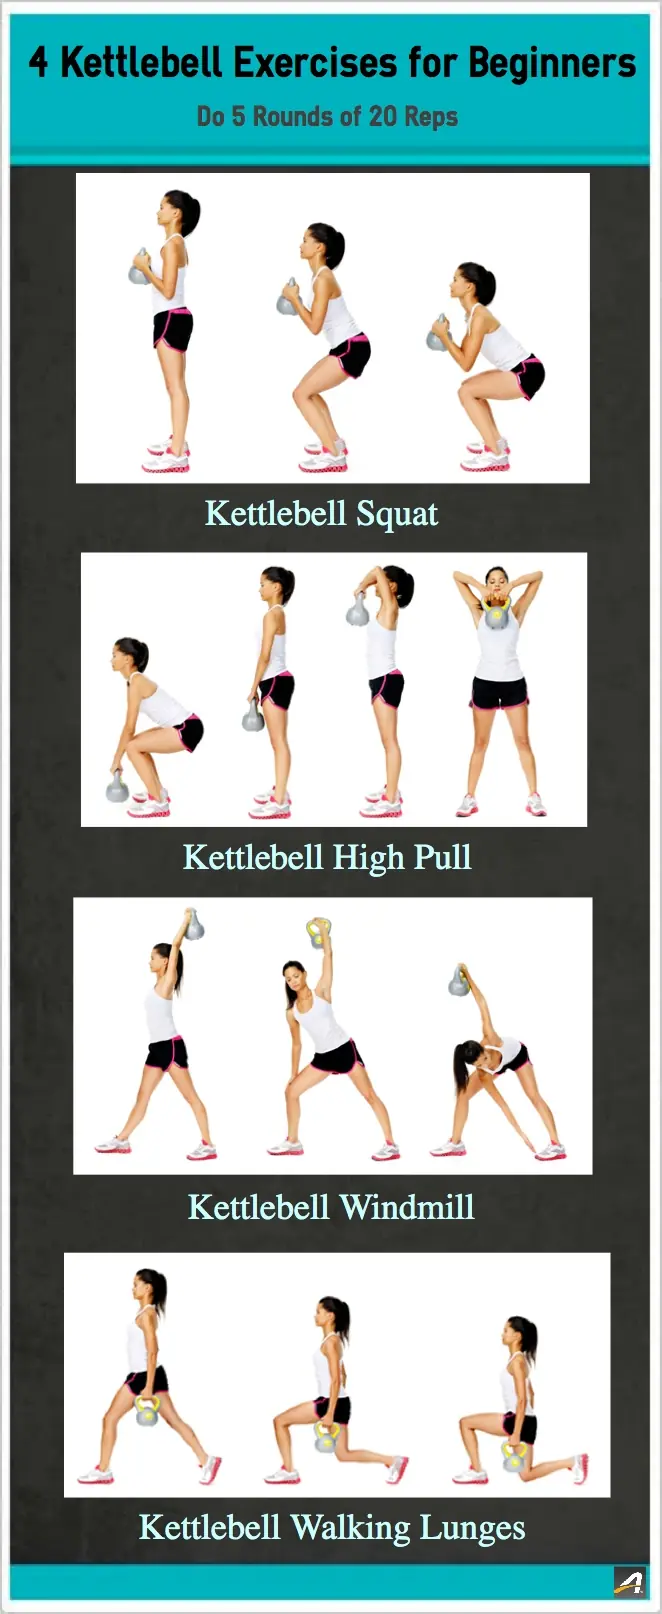 4 Kettlebell Exercises for Beginners